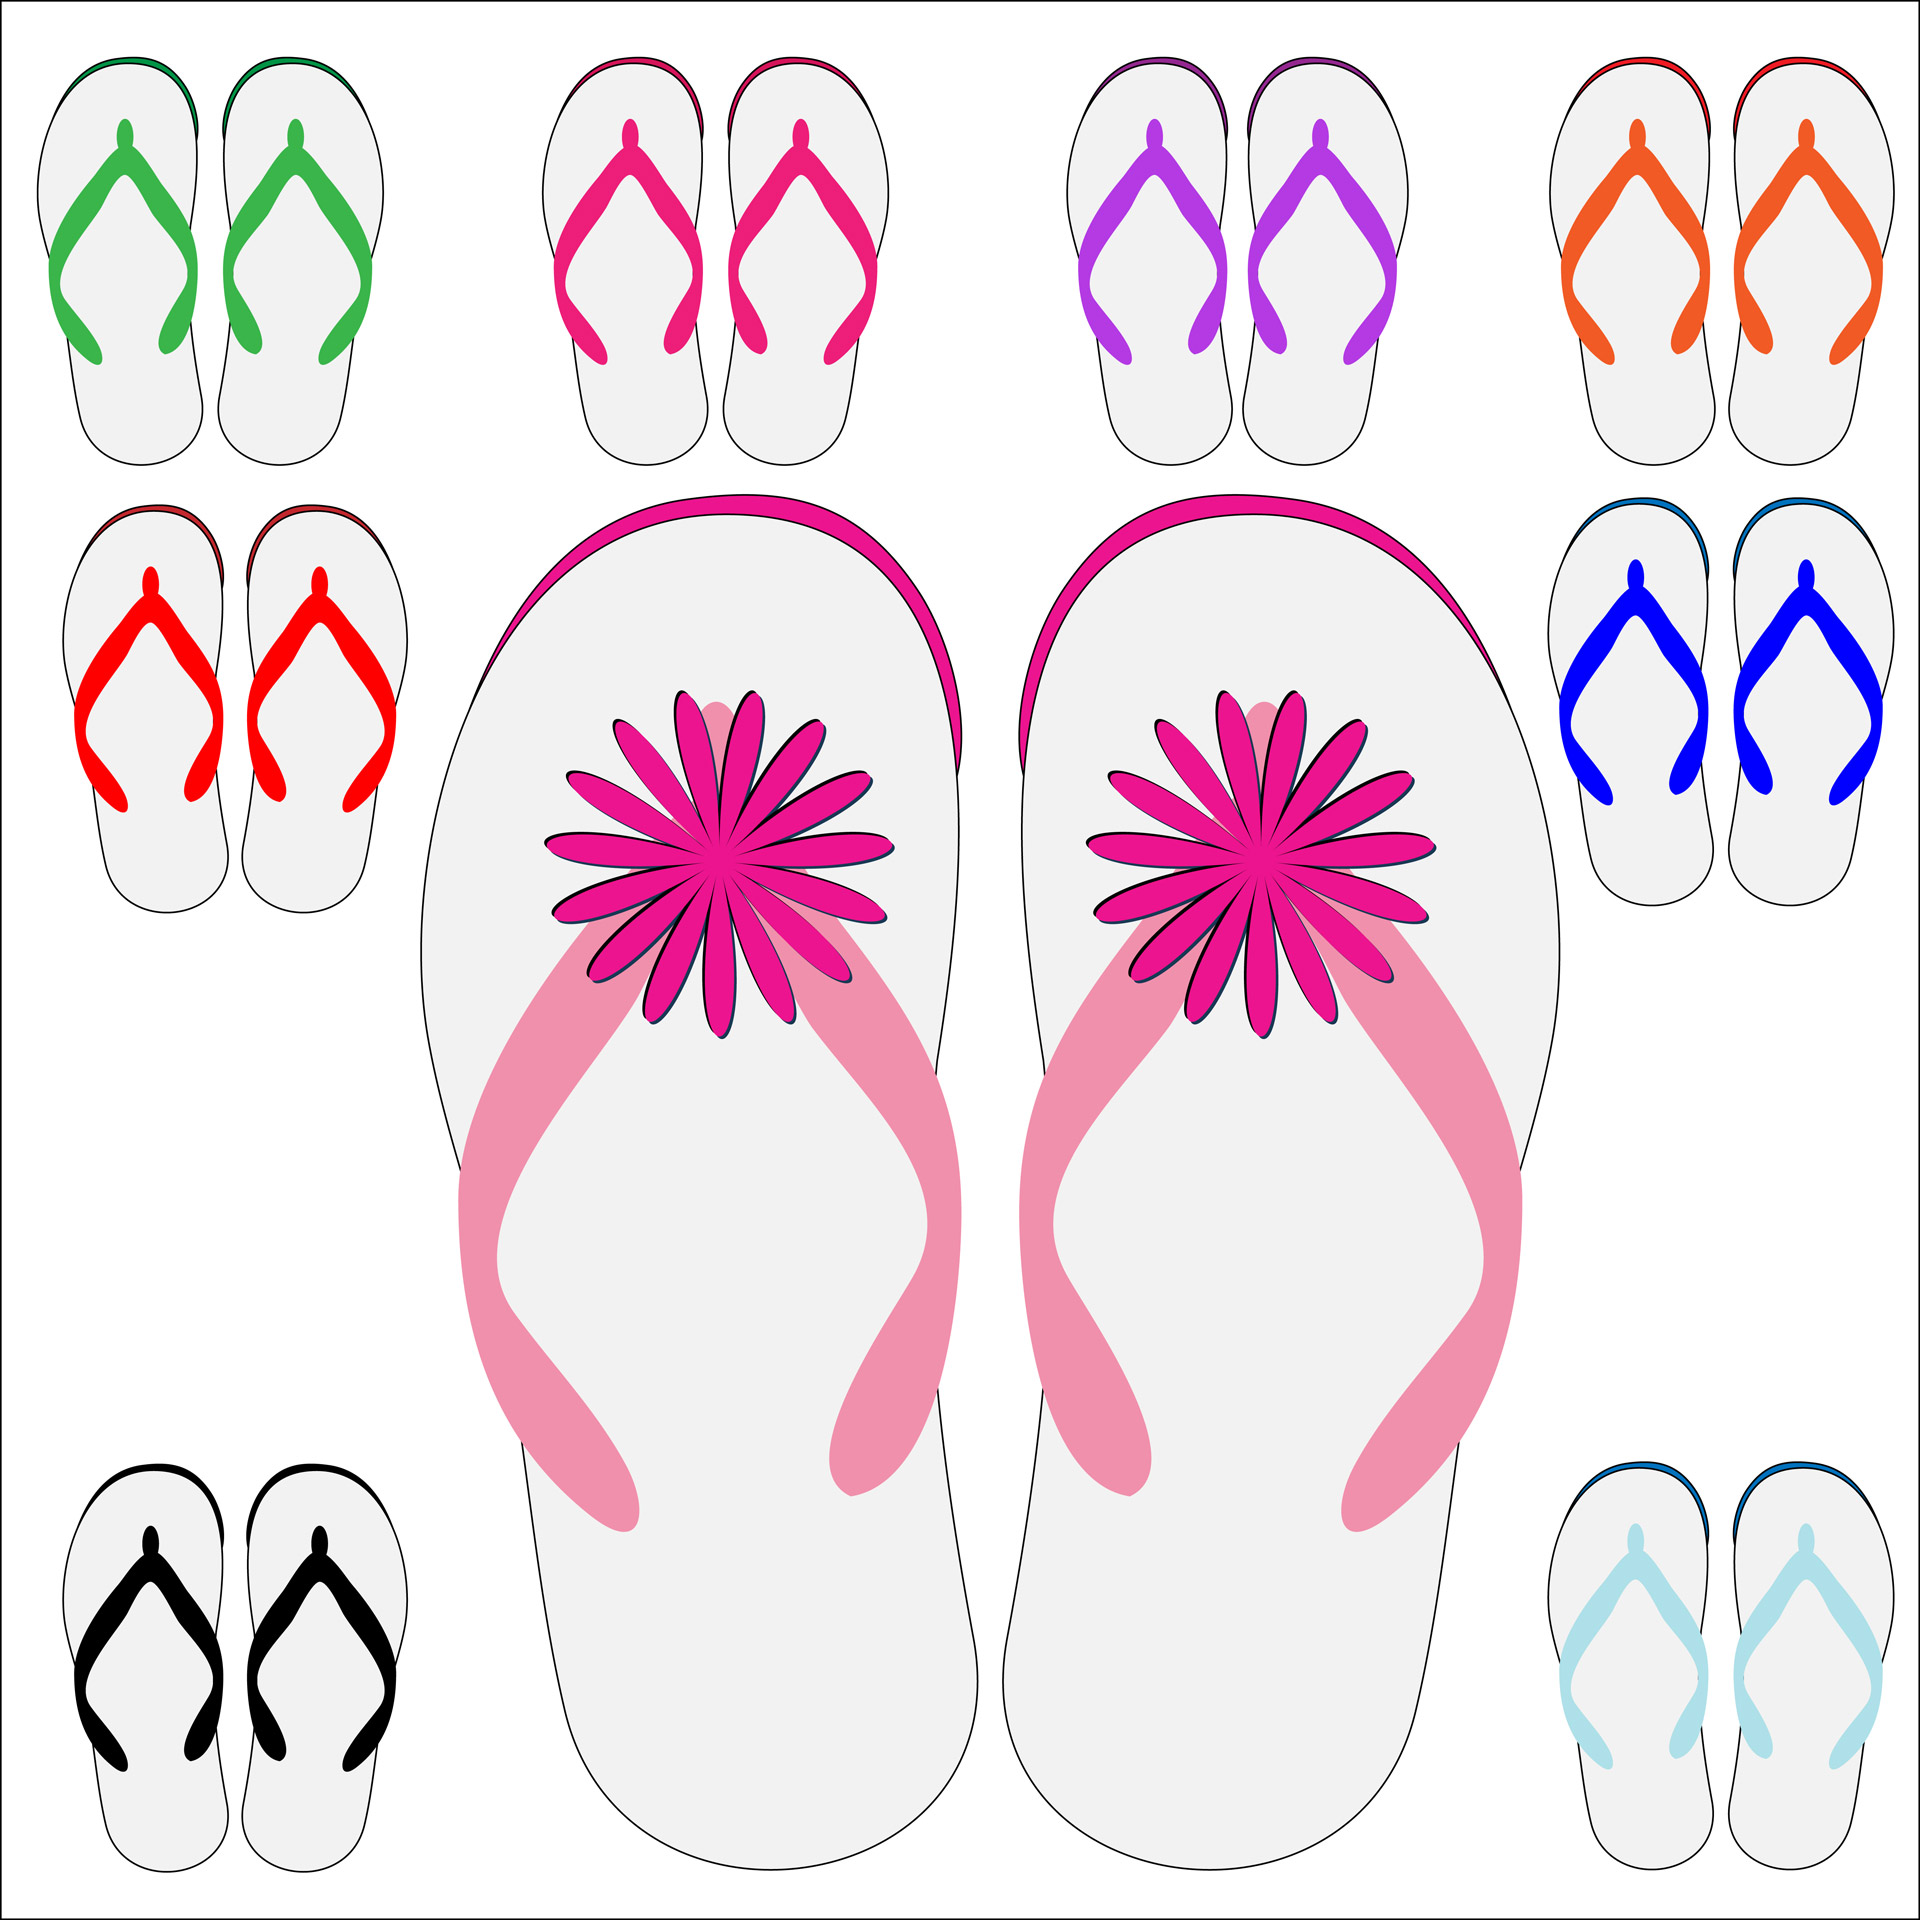 Colorful set of flip flops illustration